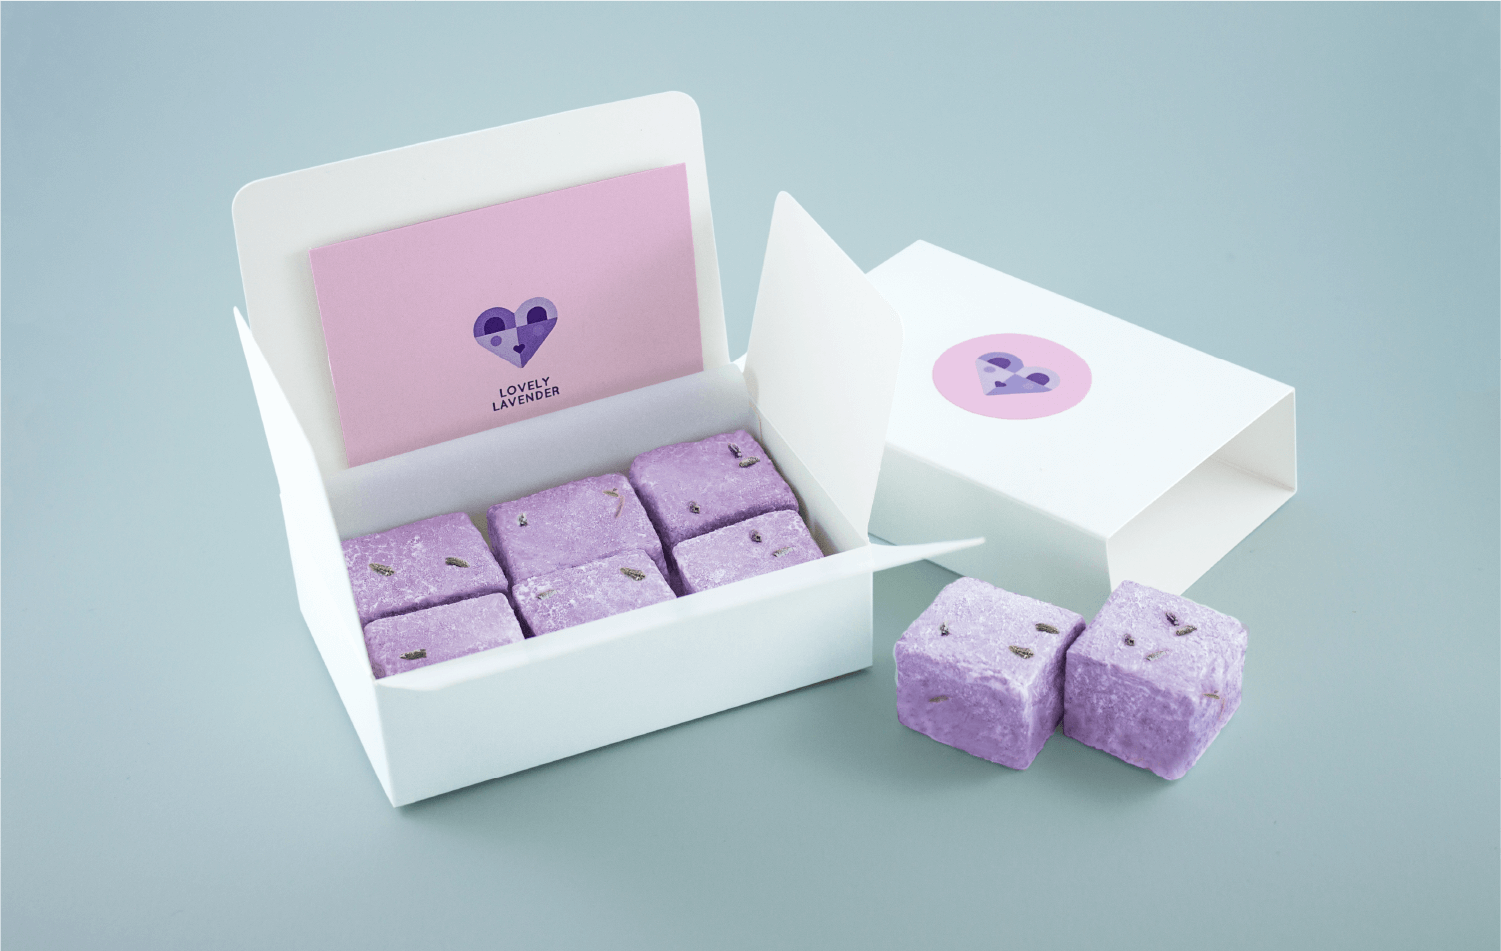 lovely lavender packaging